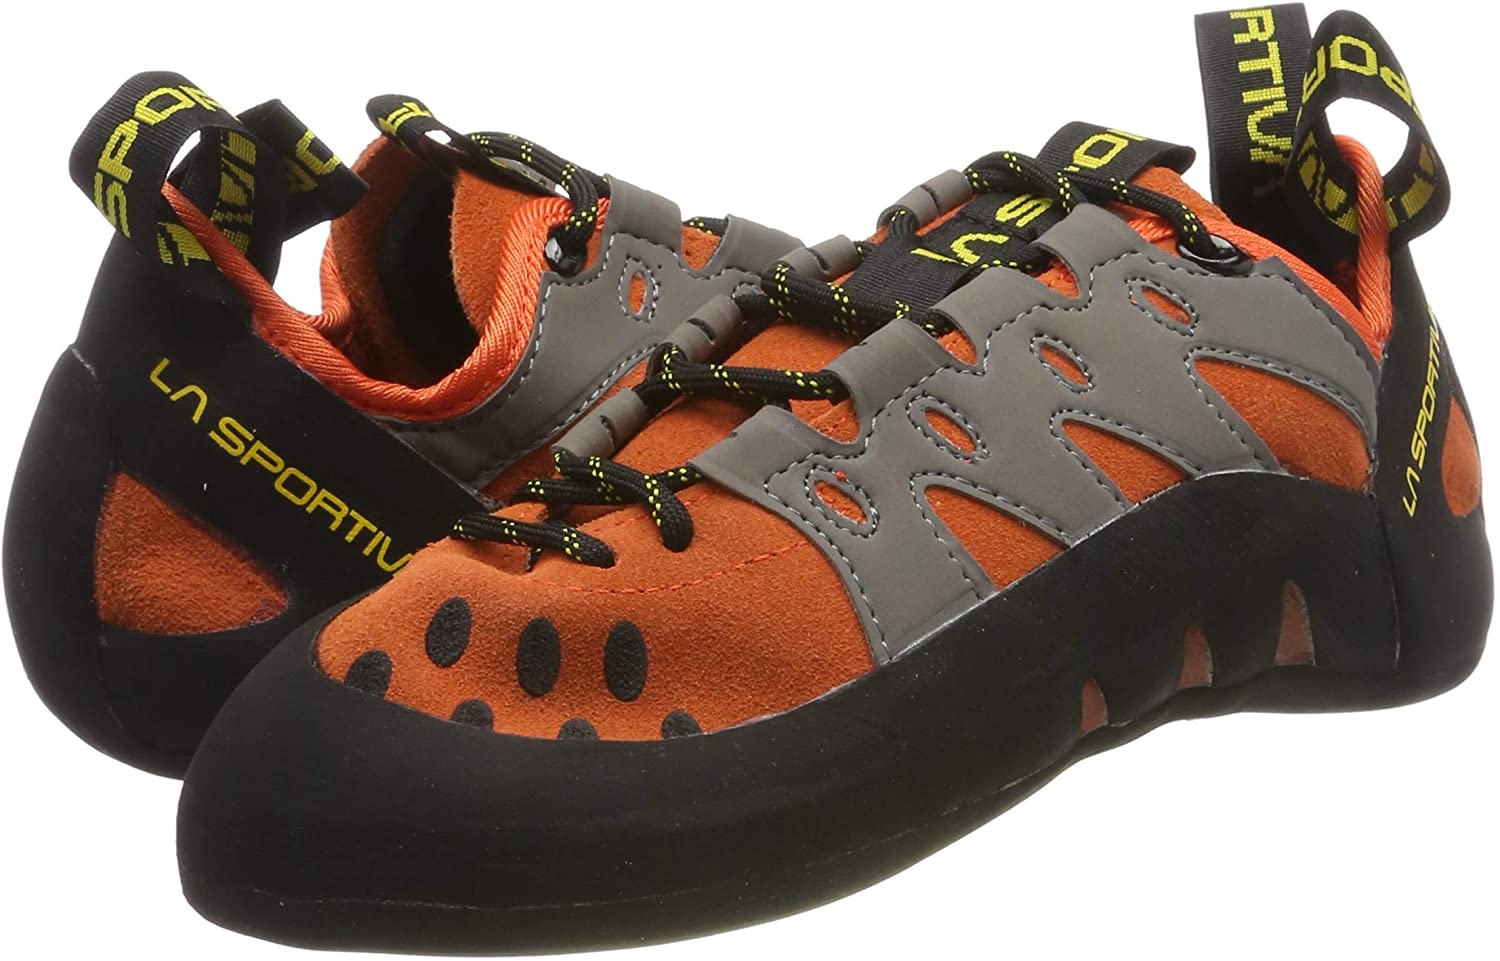 rock climbing shoes ebay